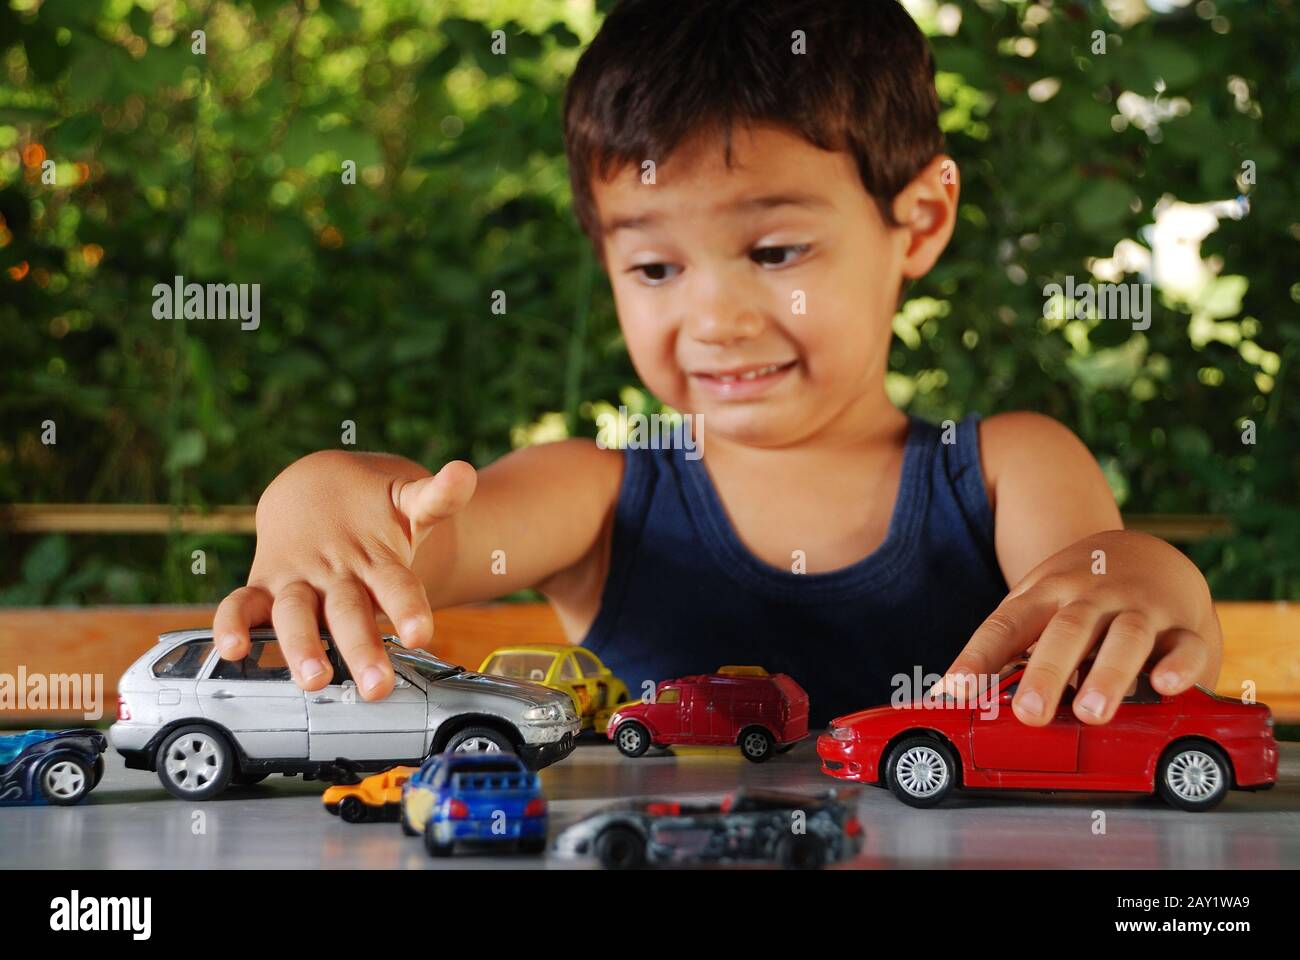 В машинки играем в куклы играем. Мальчик с машинкой в руках. Машинки играть. Дети играют в машине. Малыш с машинкой в руке.